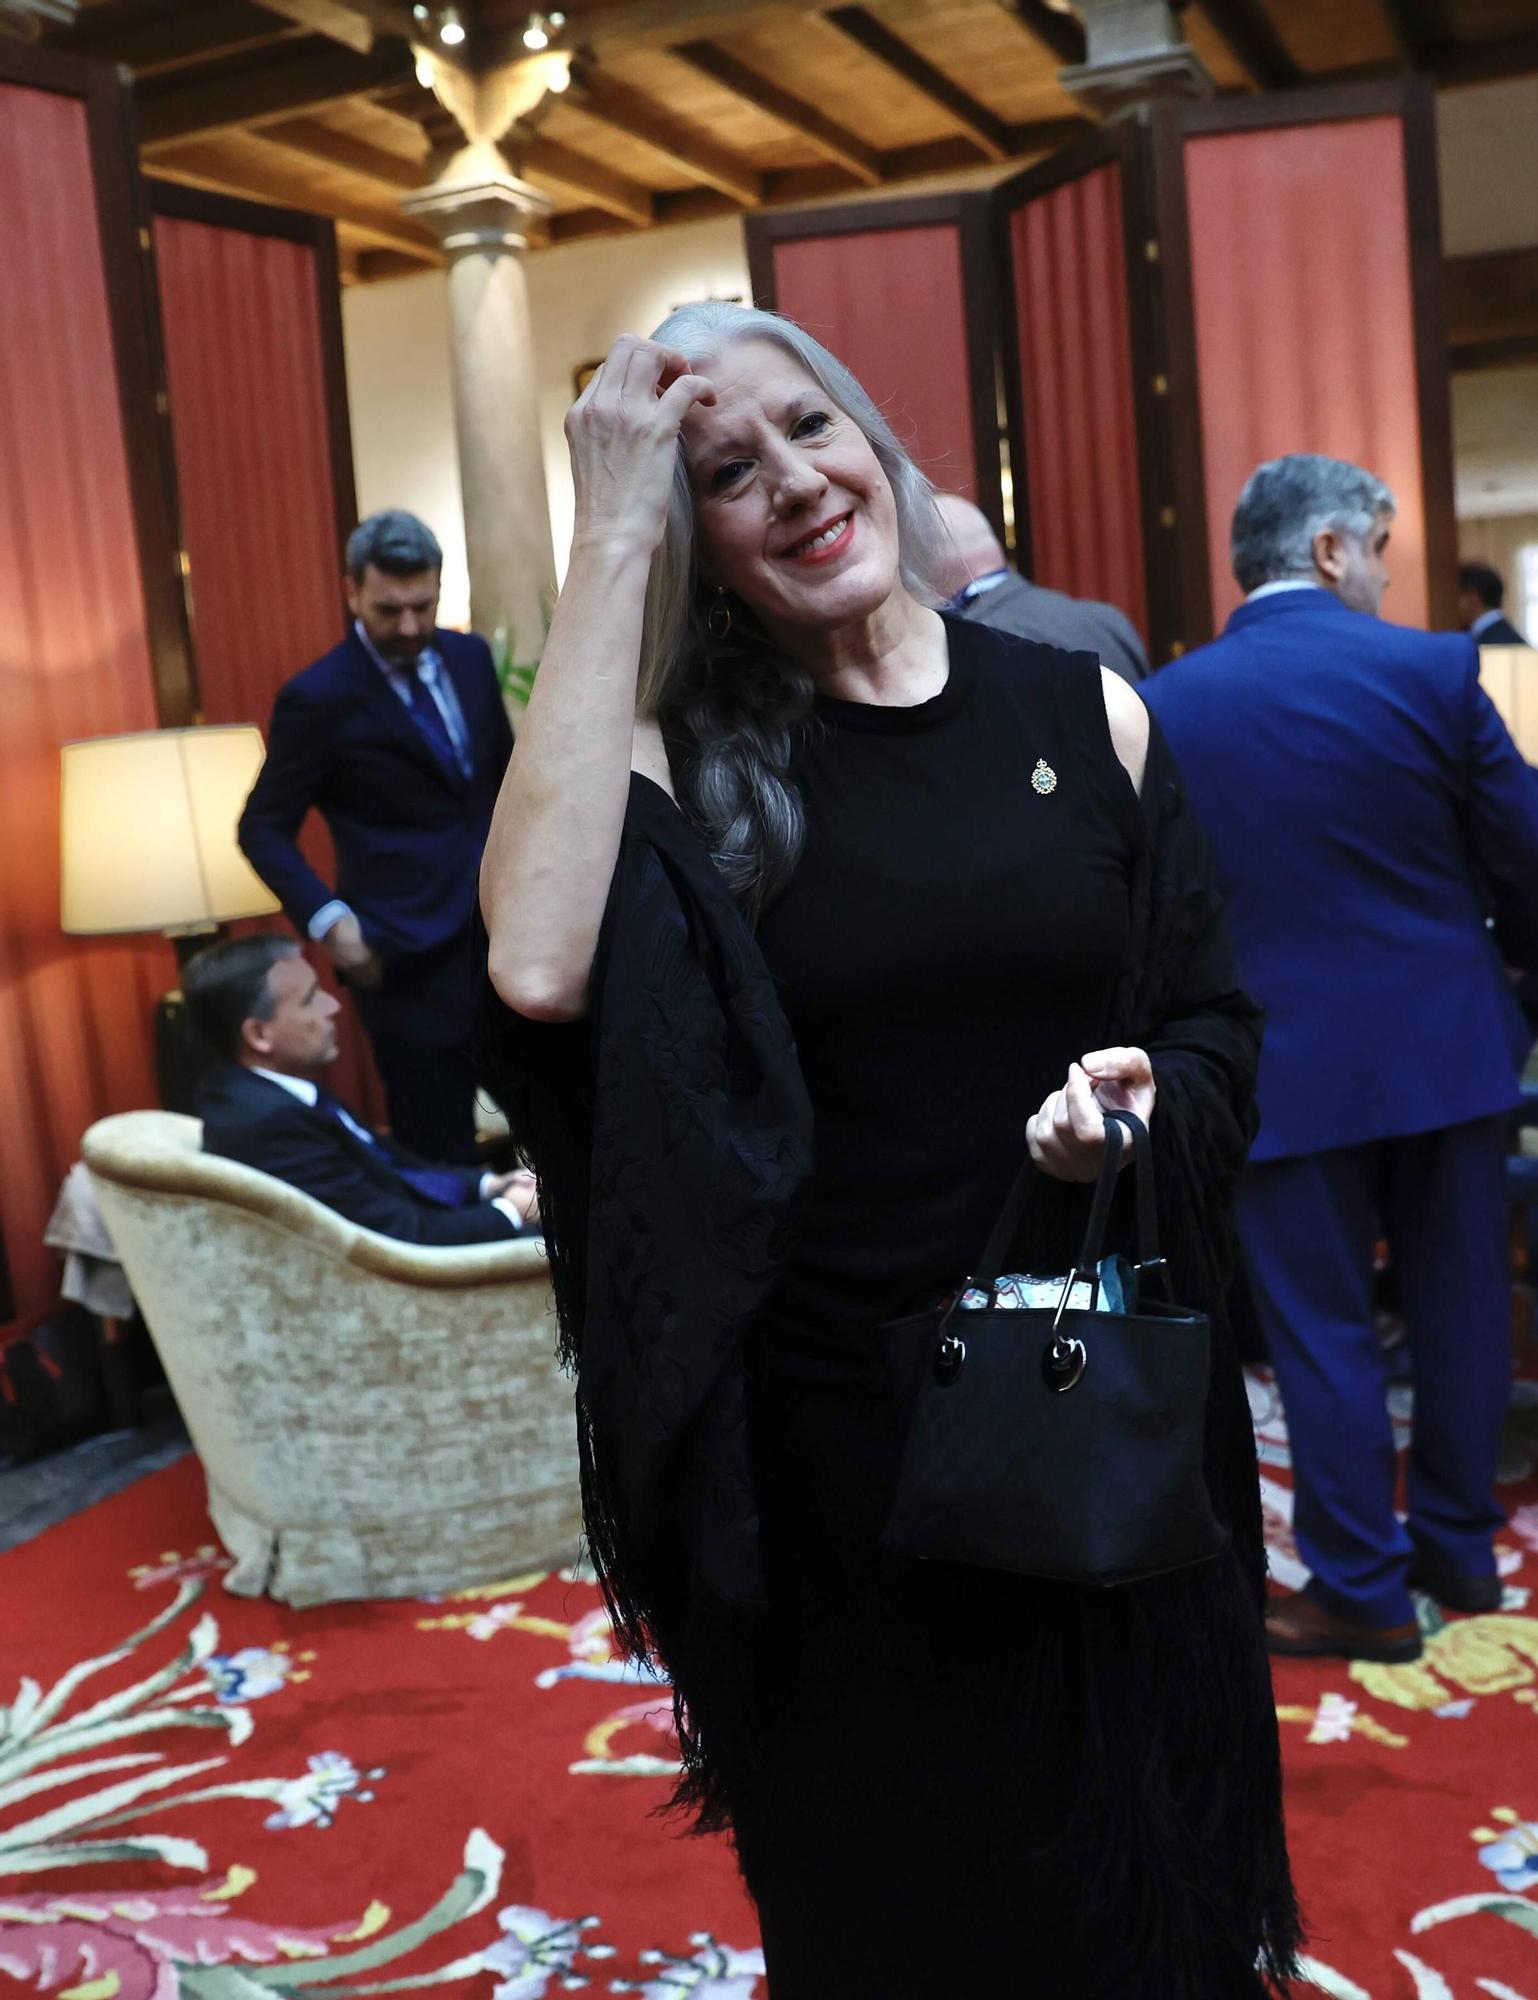 EN IMÁGENES: Personalidades, políticos y premiados se dan cita en el hotel de la Reconquista antes de la ceremonia de entrega de los Premios "Princesa"